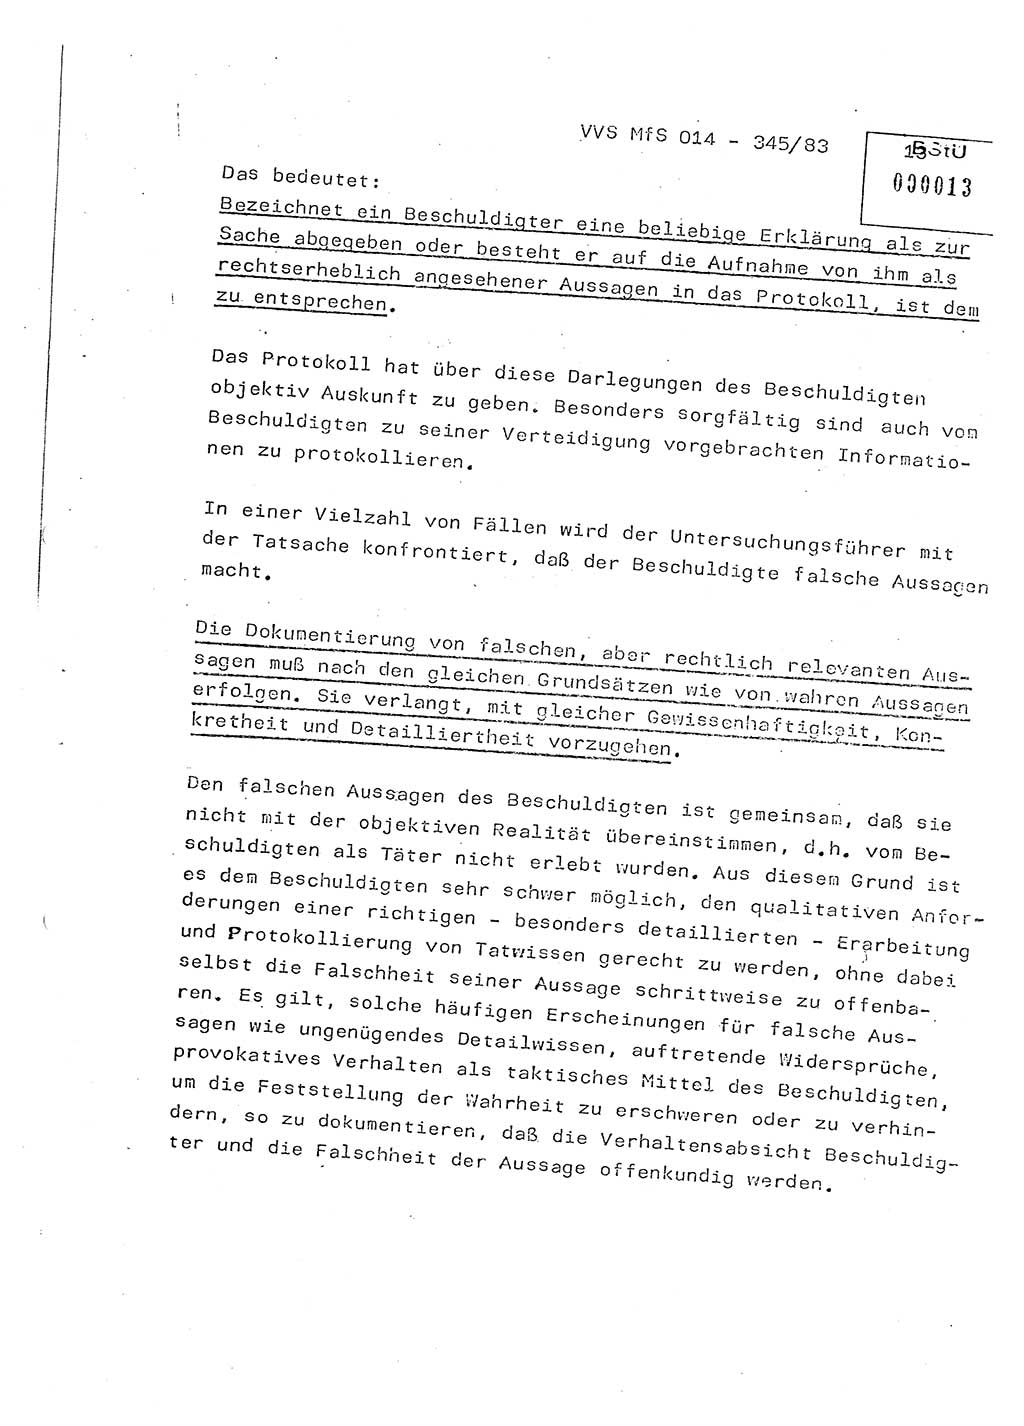 Lektion Ministerium für Staatssicherheit (MfS) [Deutsche Demokratische Republik (DDR)], Hauptabteilung (HA) Ⅸ, Vertrauliche Verschlußsache (VVS) o014-345/83, Berlin 1983, Seite 13 (Lekt. MfS DDR HA Ⅸ VVS o014-345/83 1983, S. 13)